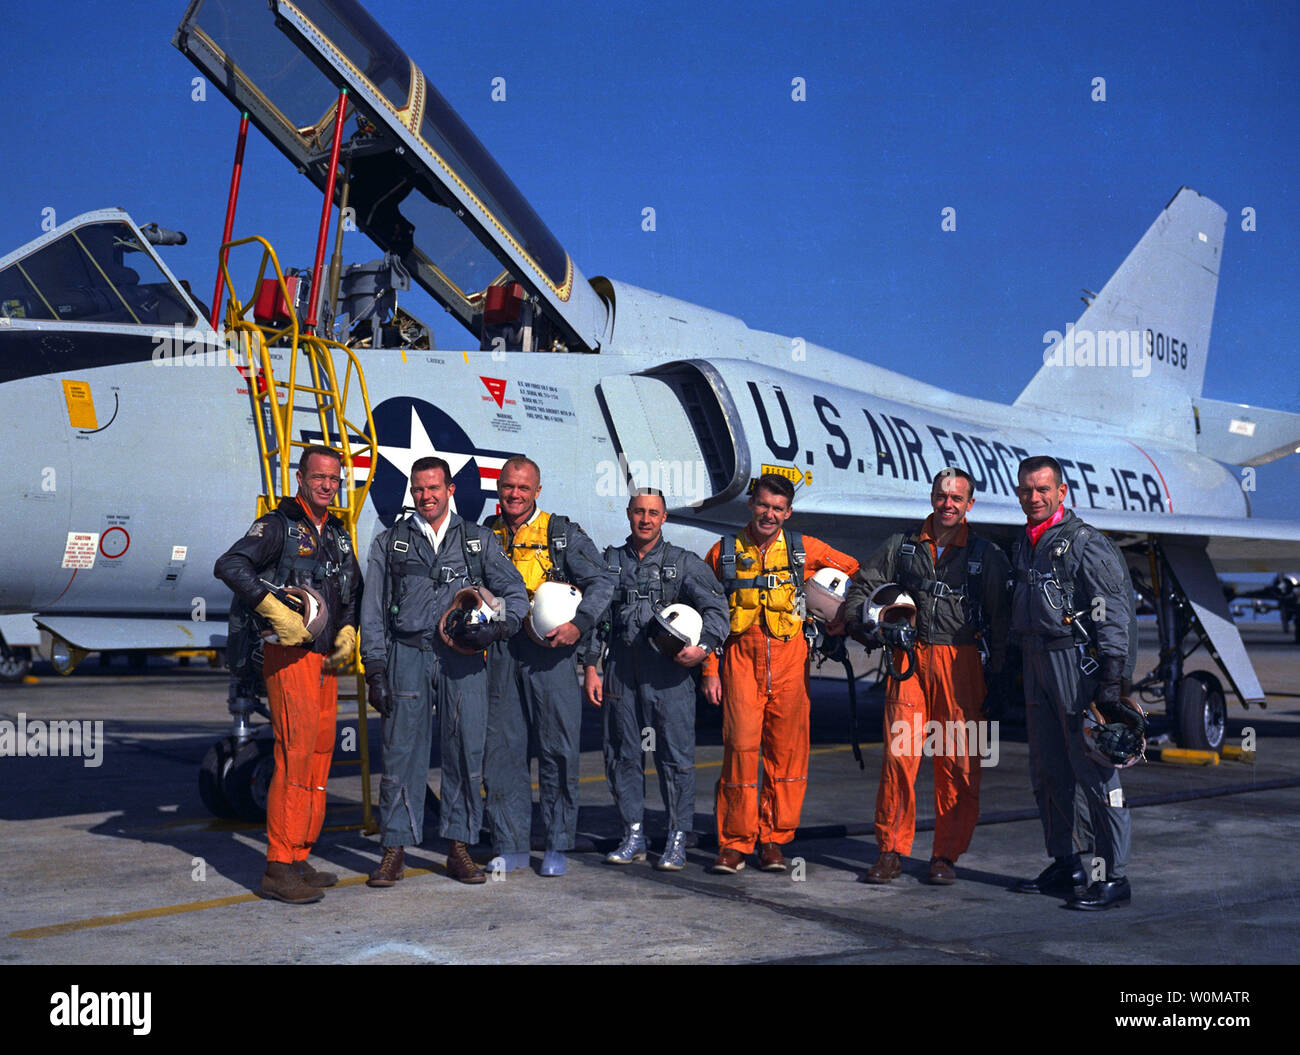 Astronauta Wally Schirra, uno l'originale Mercury sette astronauti, morì all età di 84 a San Diego il 2 maggio 2007. Schirra era l'unico astronauta a volare in mercurio, Gemini e Apollo programmi spaziali. Egli è mostrato con l'originale sette astronauti in un file non datata immagine (L-R): Scott Carpenter, Gordon Cooper, John Glenn, Gus Grissom, Schirra, Alan Shepard e il duca Slayton. (UPI foto/NASA/file) Foto Stock